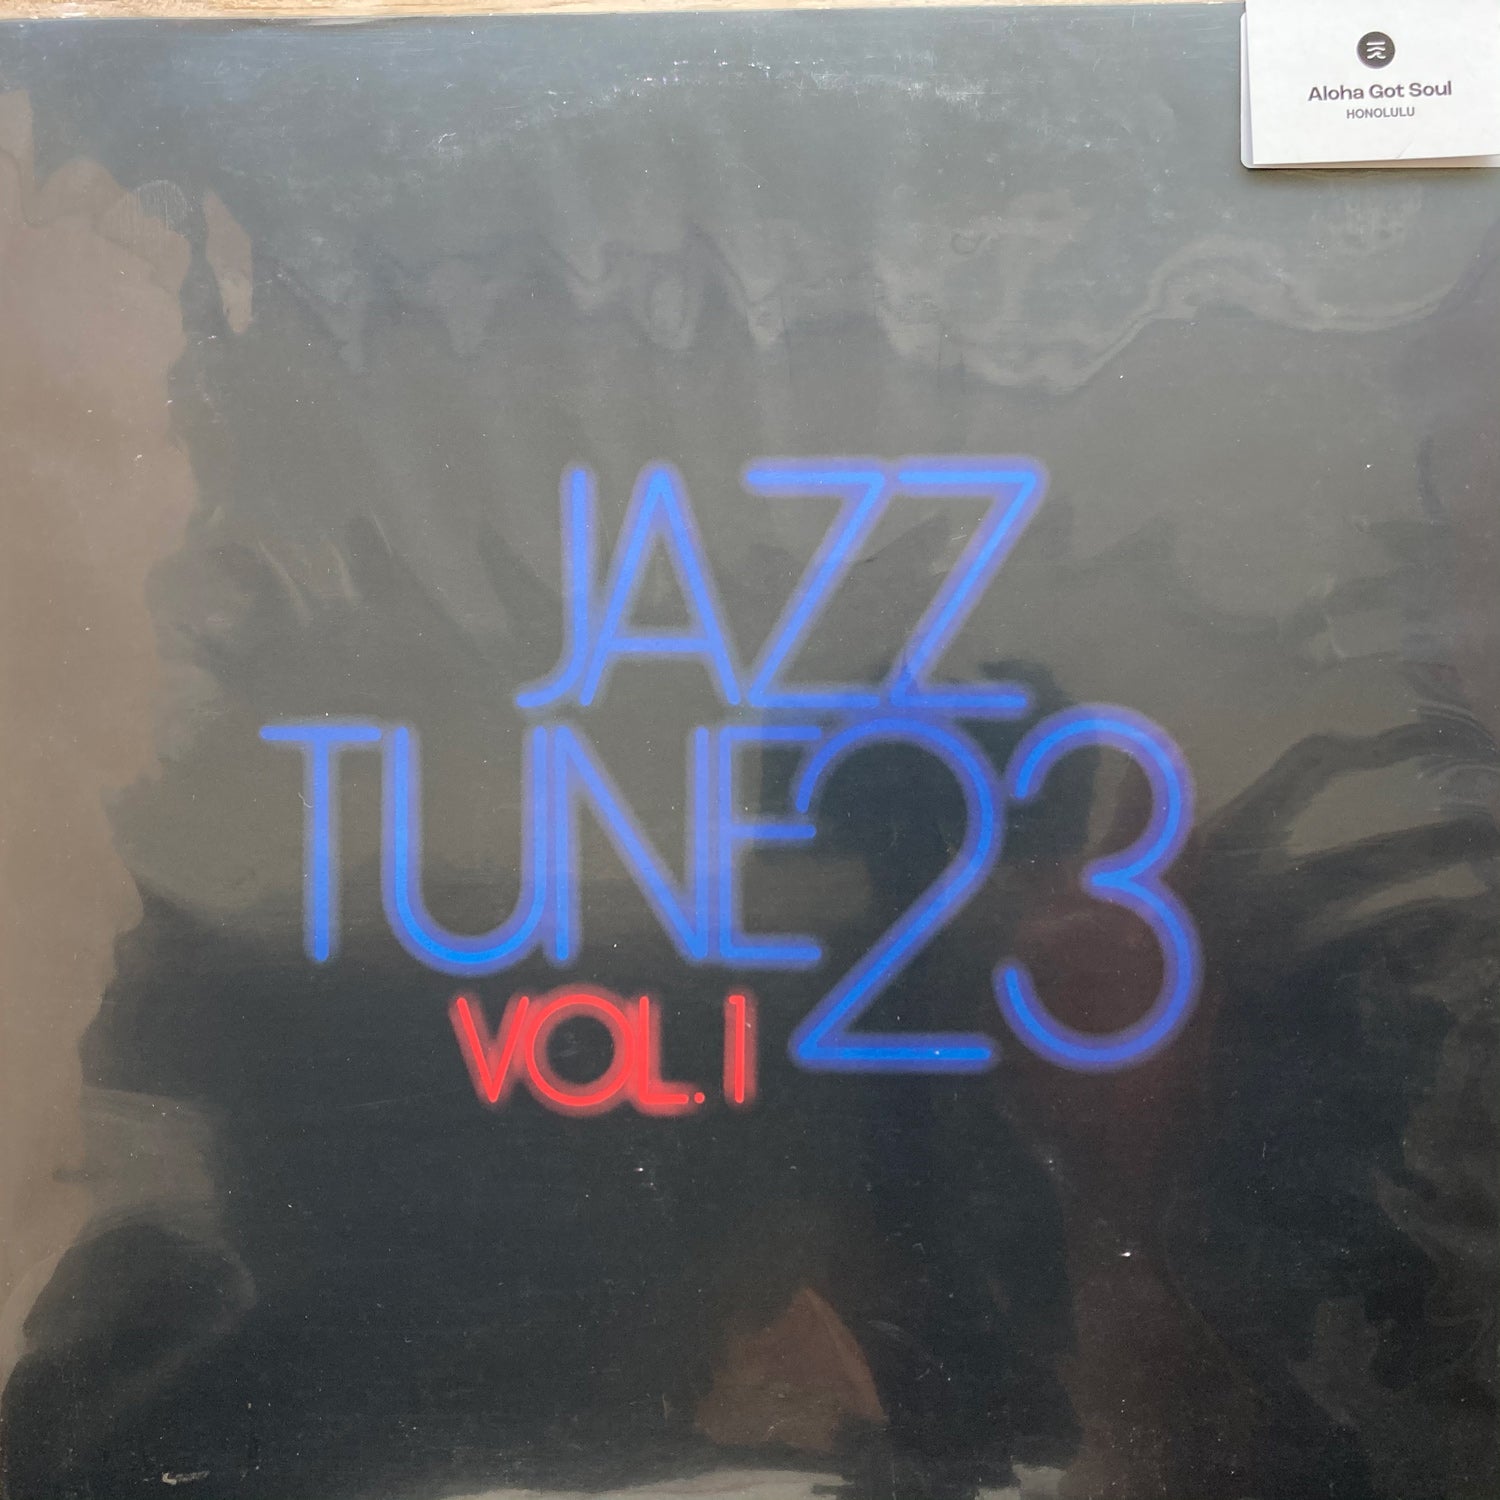 Jazz Tune 23 - Vol. 1